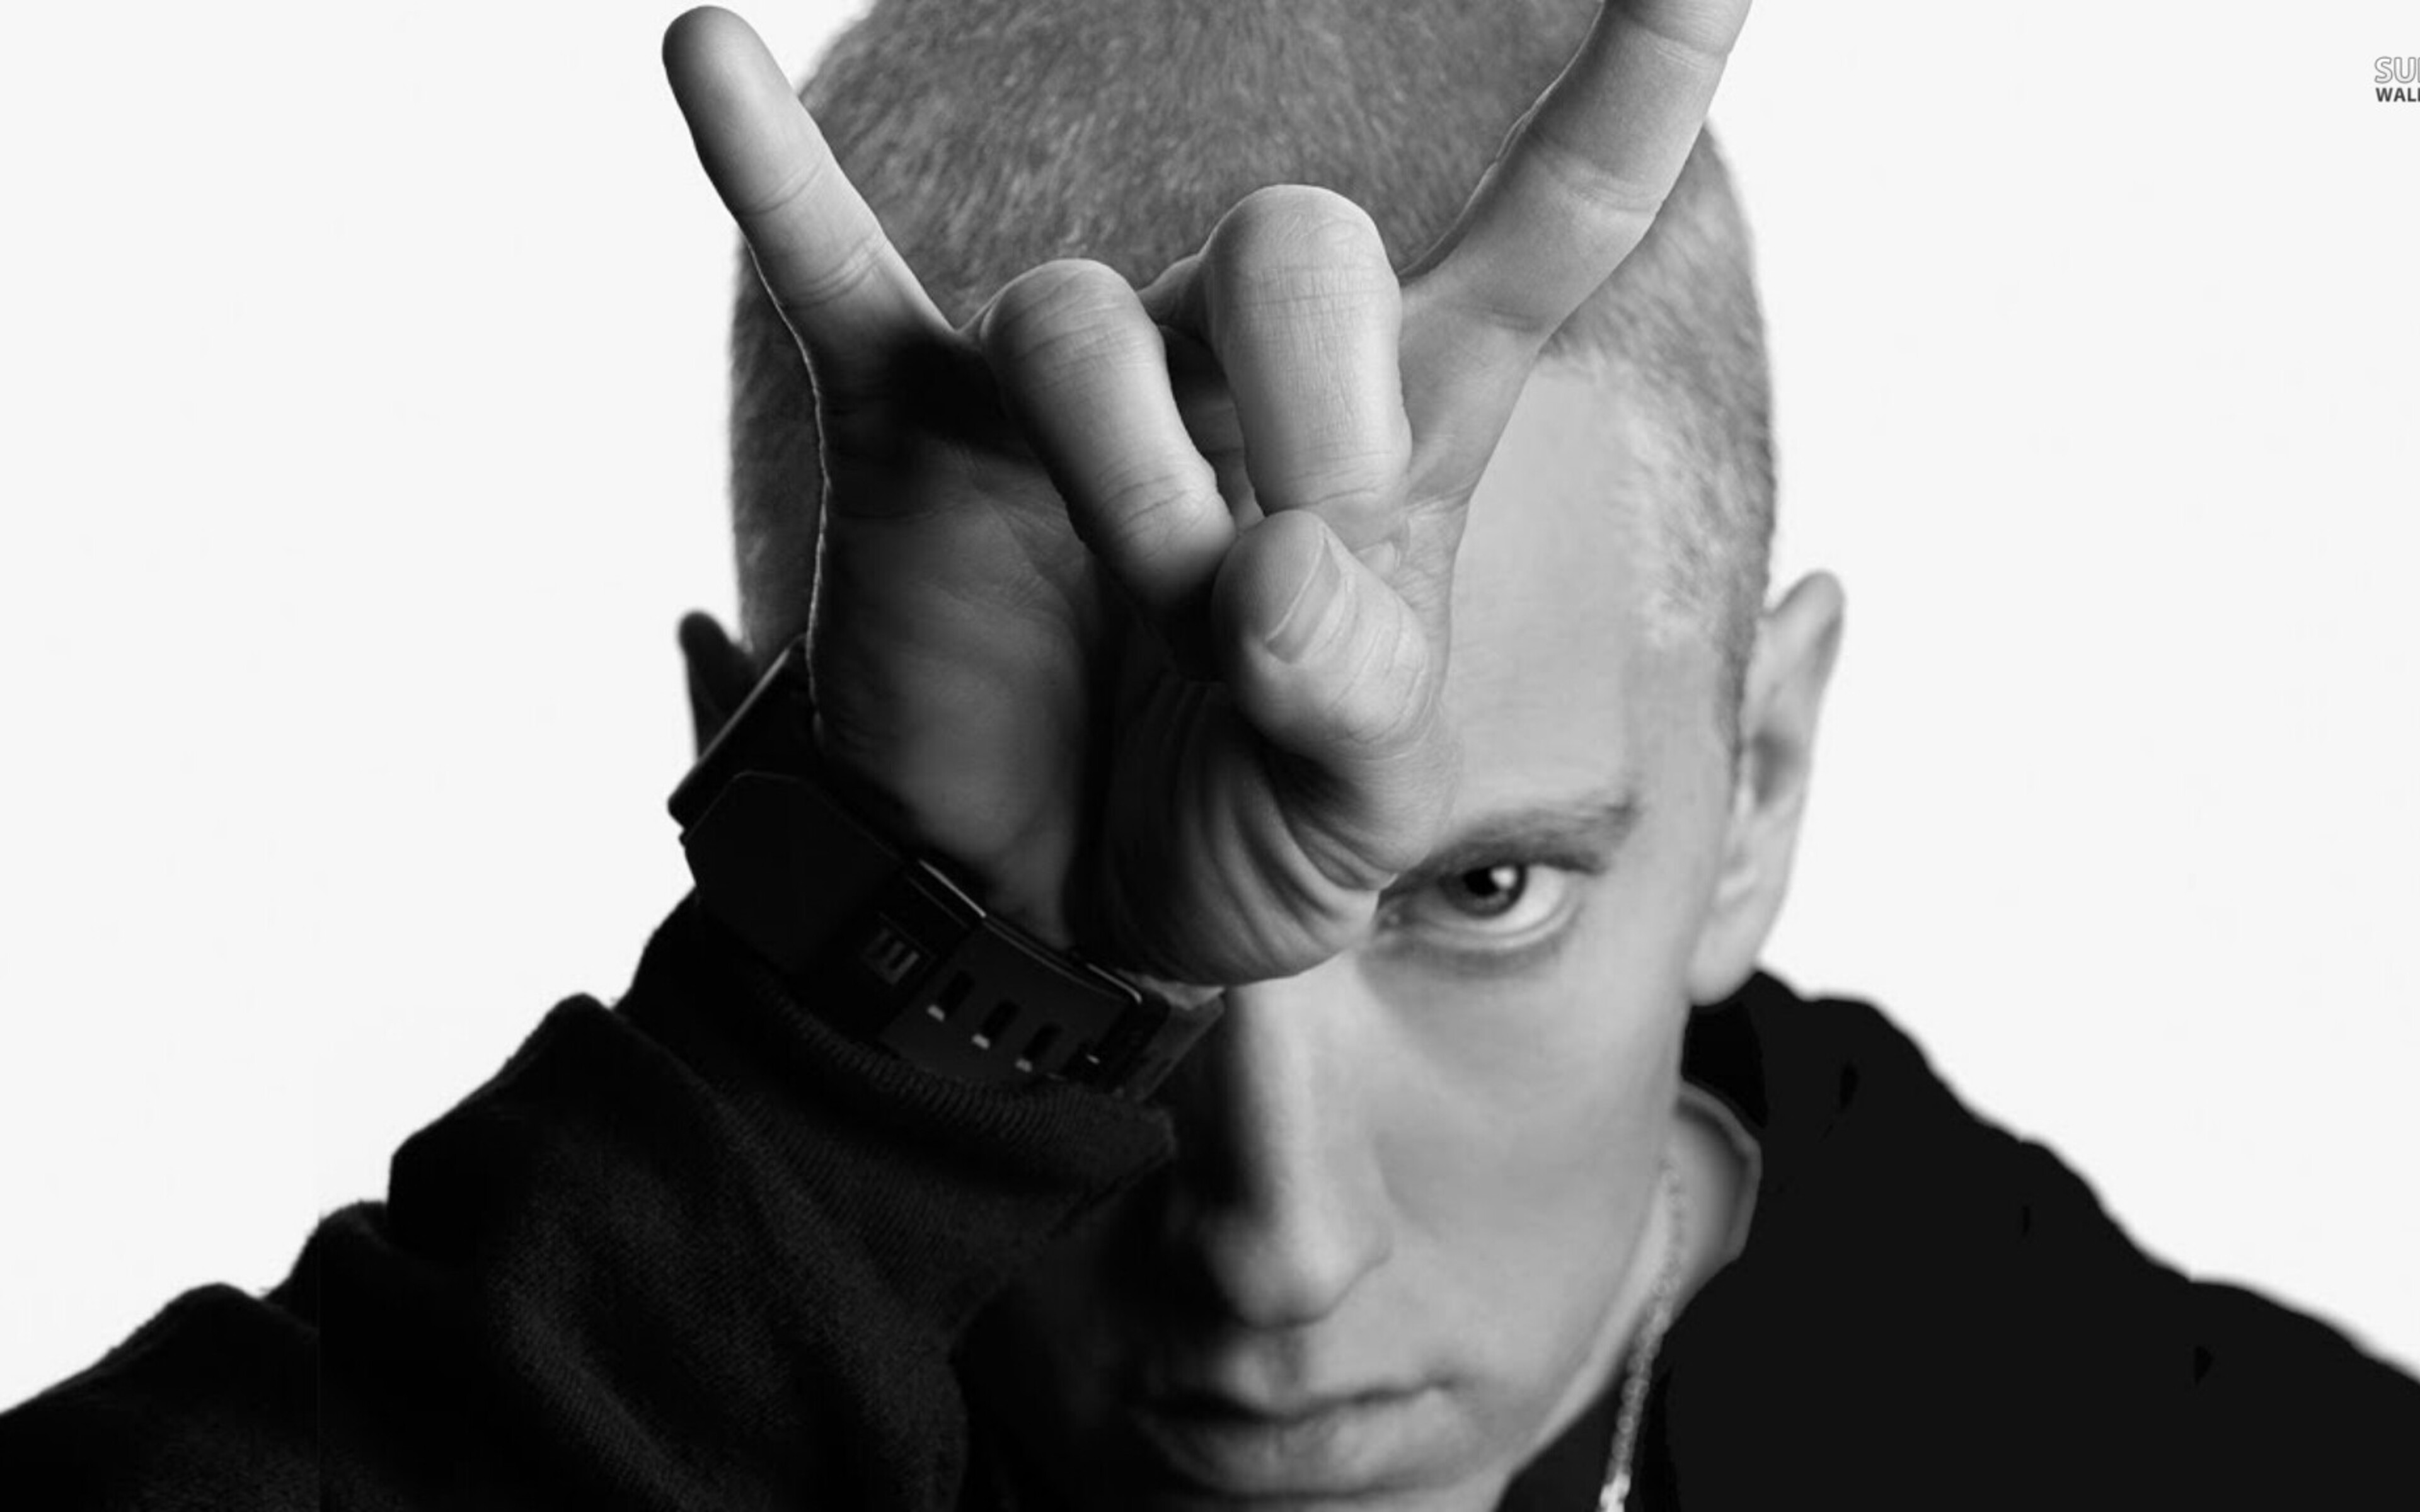 3840x2400 Eminem Rapper 4k HD 4k Wallpapers, Images, Backgrounds ...